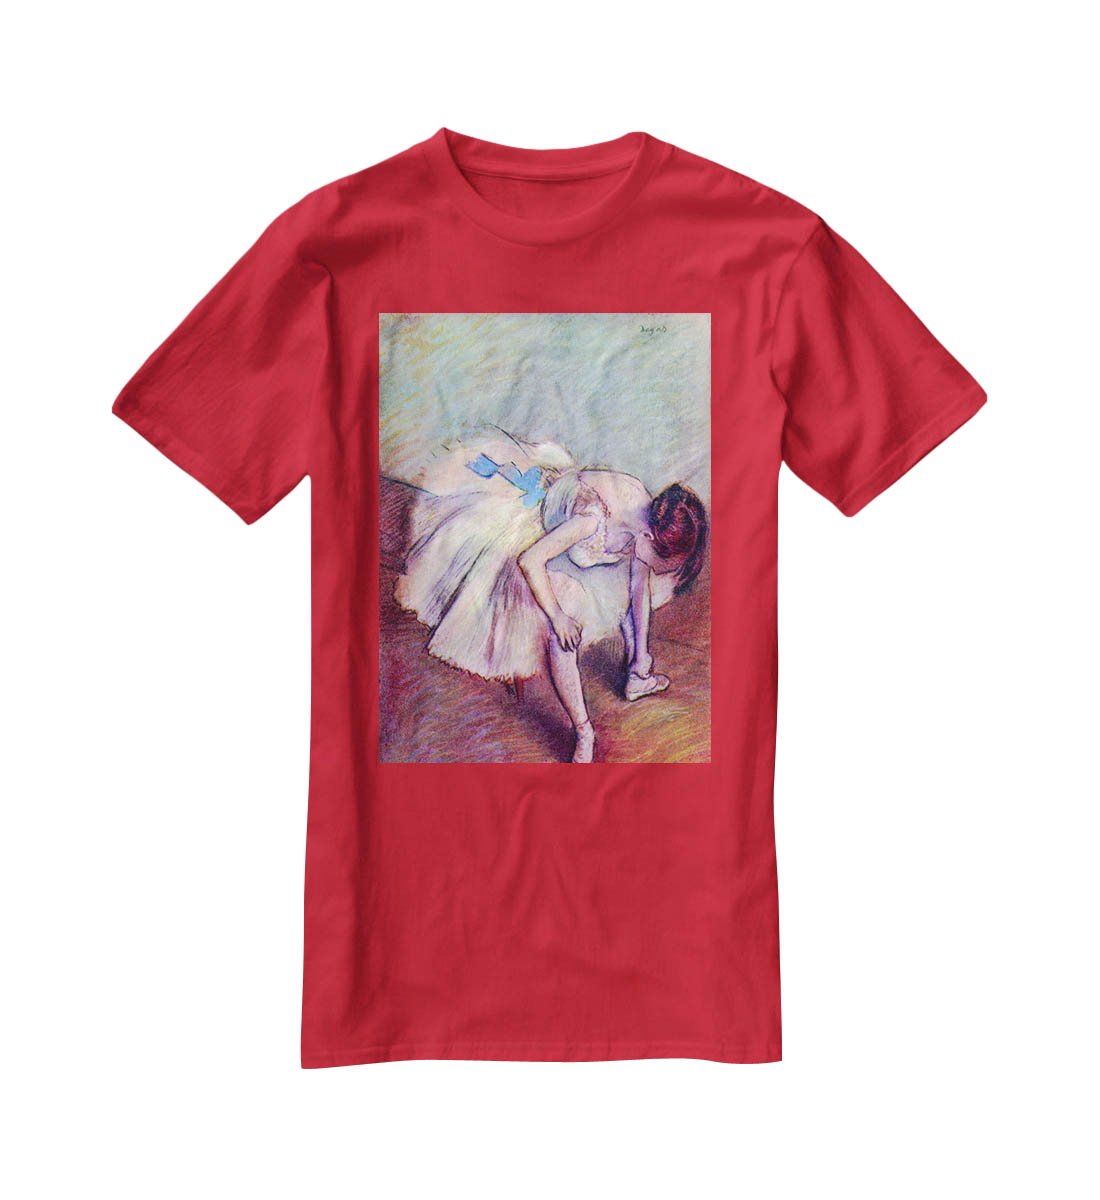 Dancer 2 by Degas T-Shirt - Canvas Art Rocks - 4